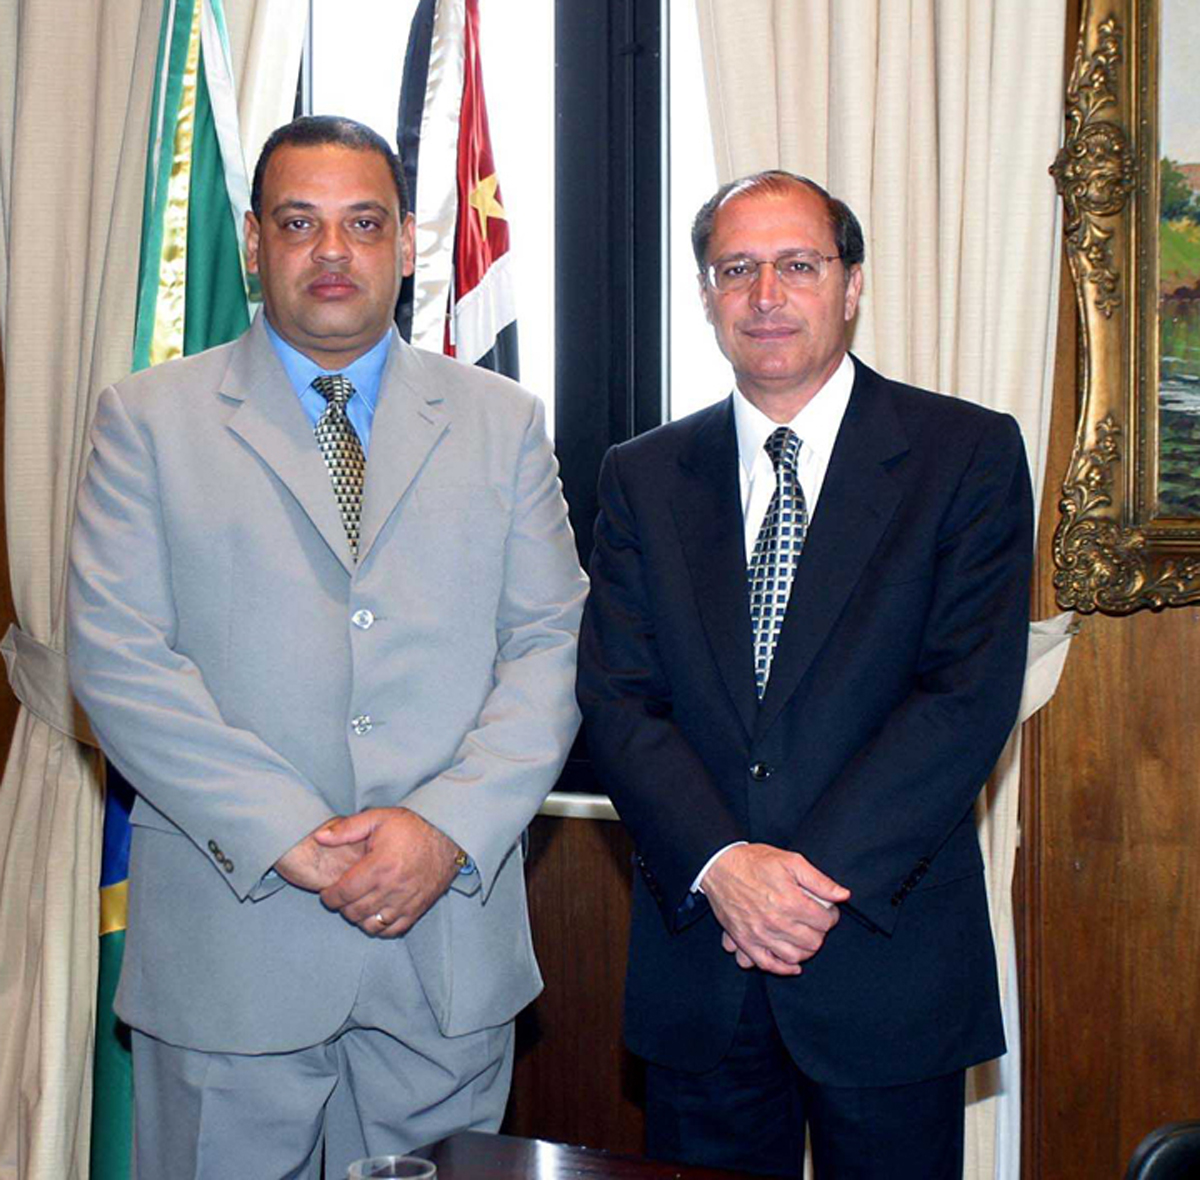 Deputado Roberto Alves e governador Geraldo Alckmin <a style='float:right;color:#ccc' href='https://www3.al.sp.gov.br/repositorio/noticia/03-2008/Roberto Alves gov alck.jpg' target=_blank><i class='bi bi-zoom-in'></i> Clique para ver a imagem </a>